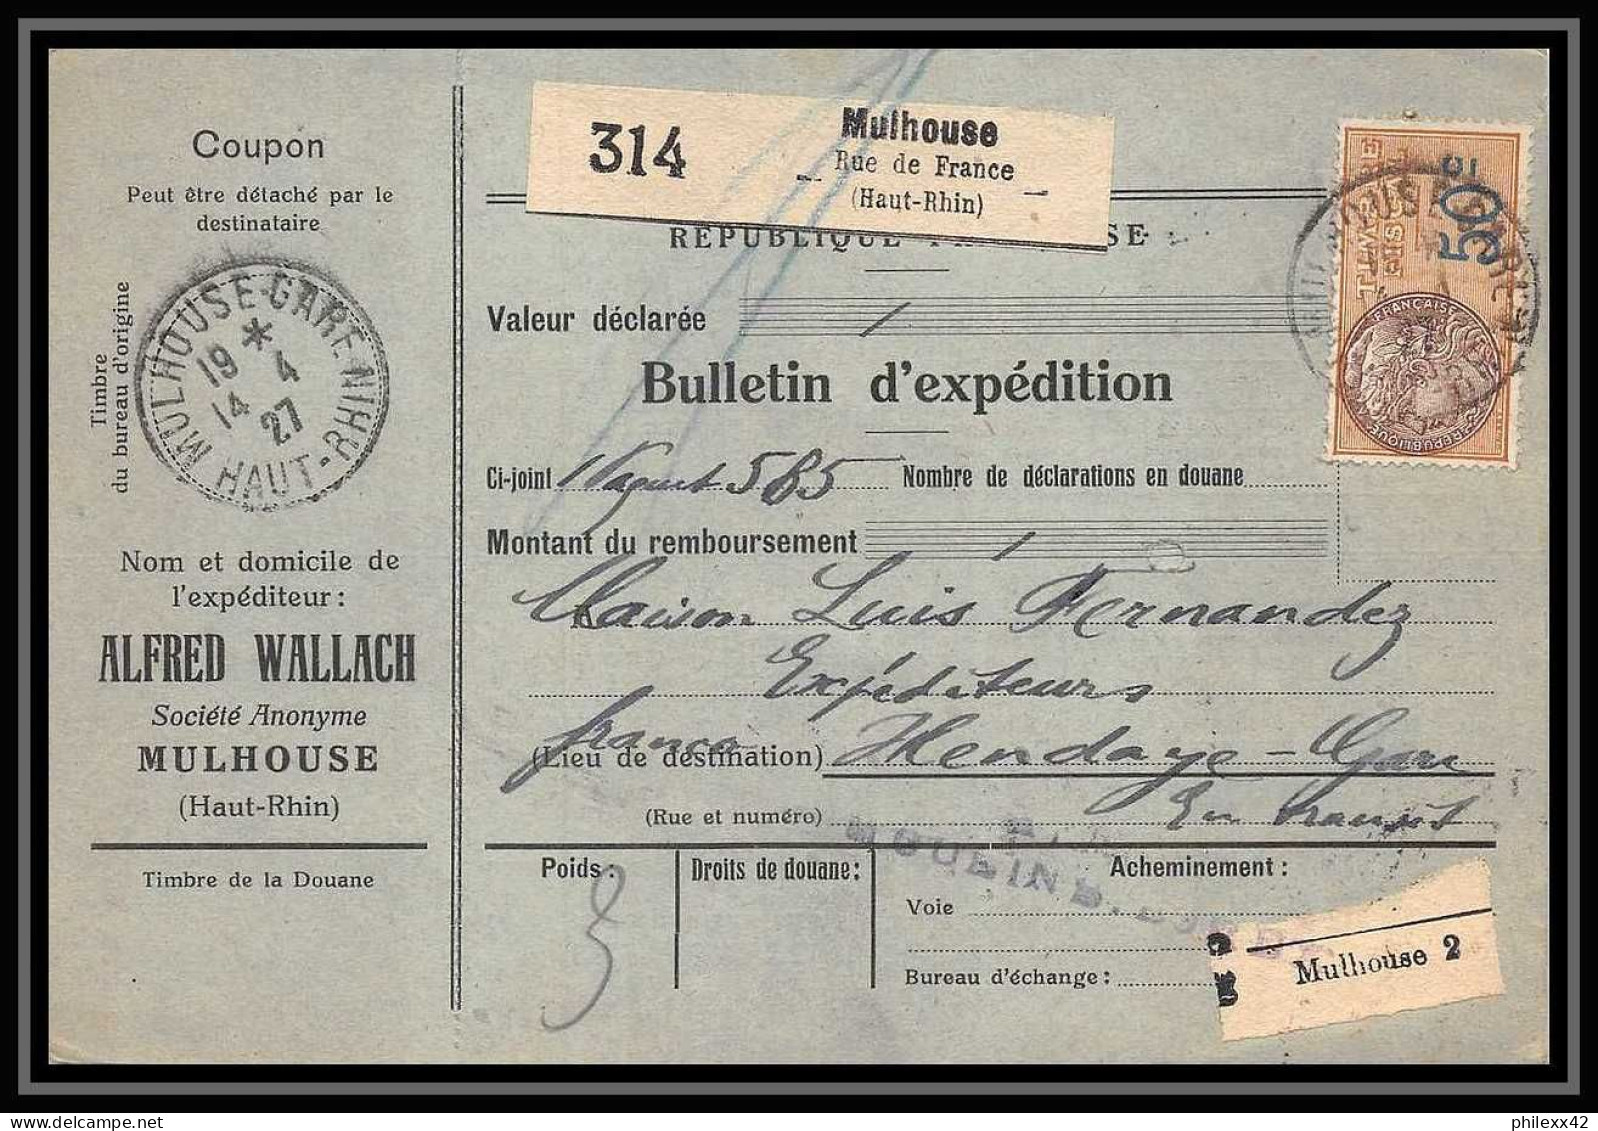 25056 Bulletin D'expédition France Colis Postaux Fiscal Haut Rhin - 1927 Mulhouse Merson 206 Alsace-Lorraine  - Covers & Documents